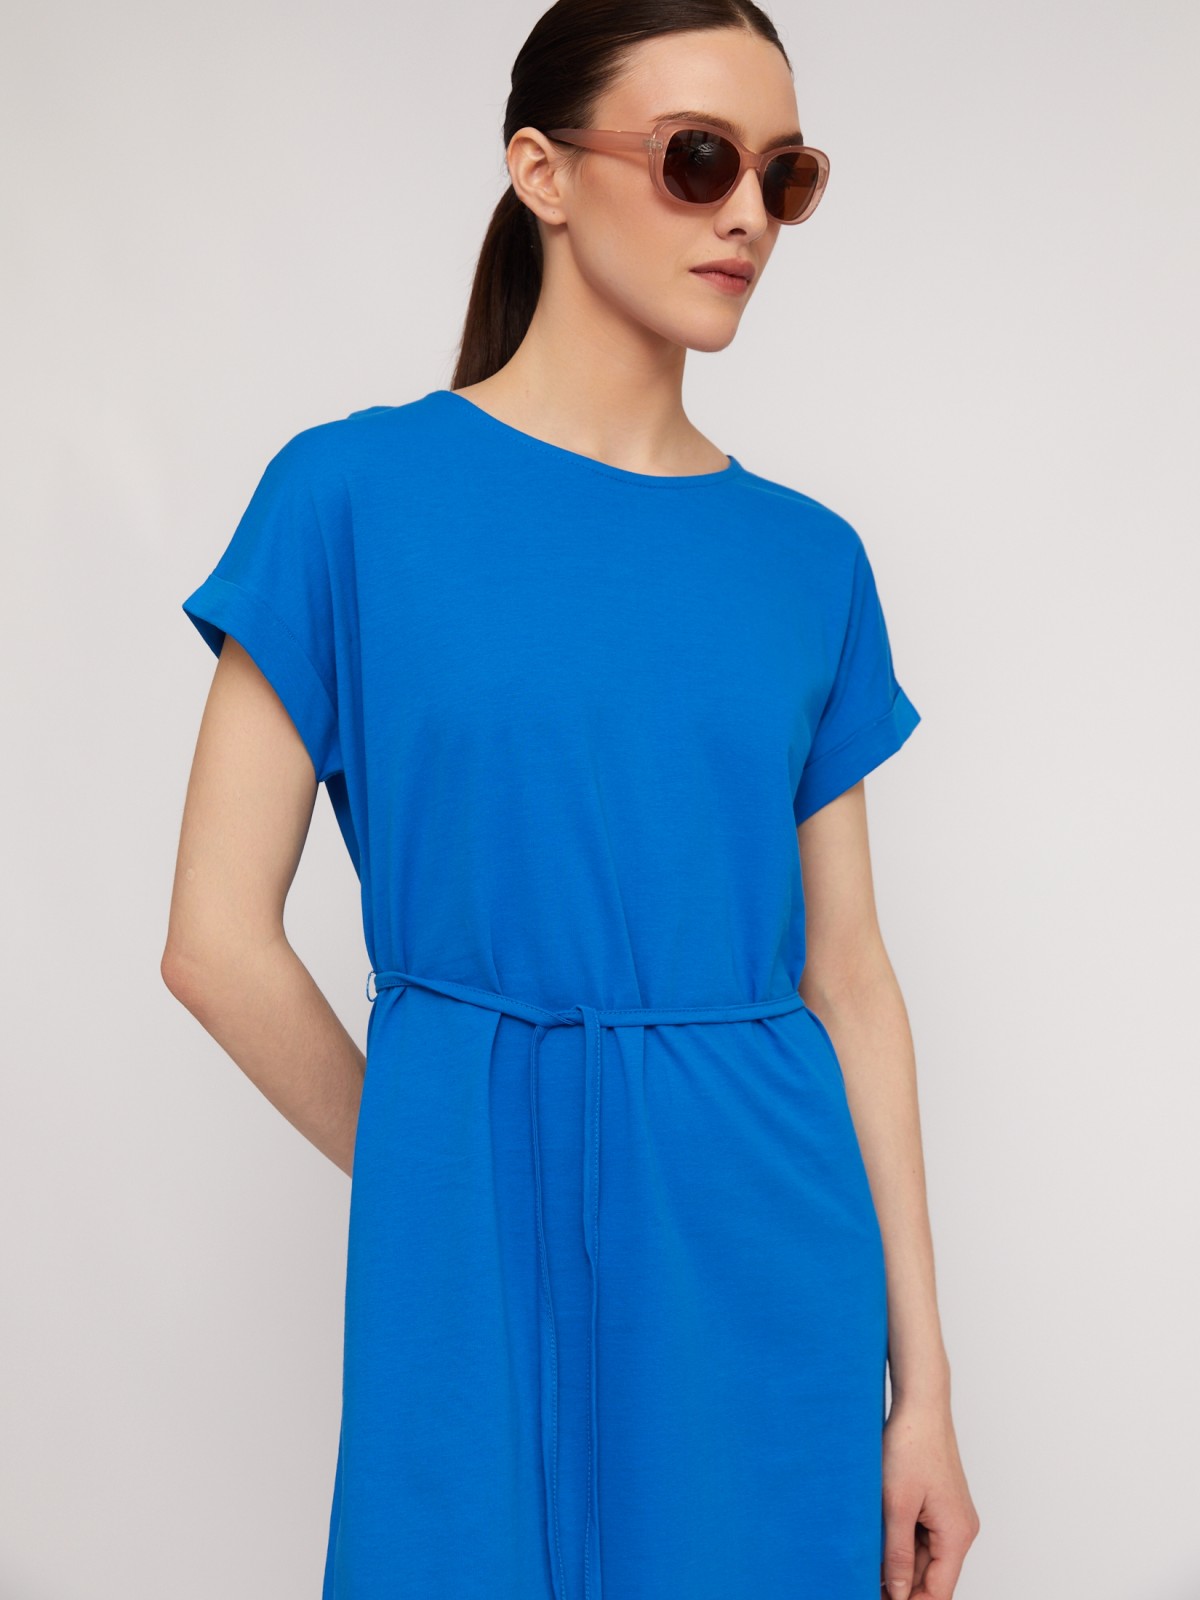 Платье-футболка из хлопка с поясом zolla N2424810G232, цвет голубой, размер L - фото 4